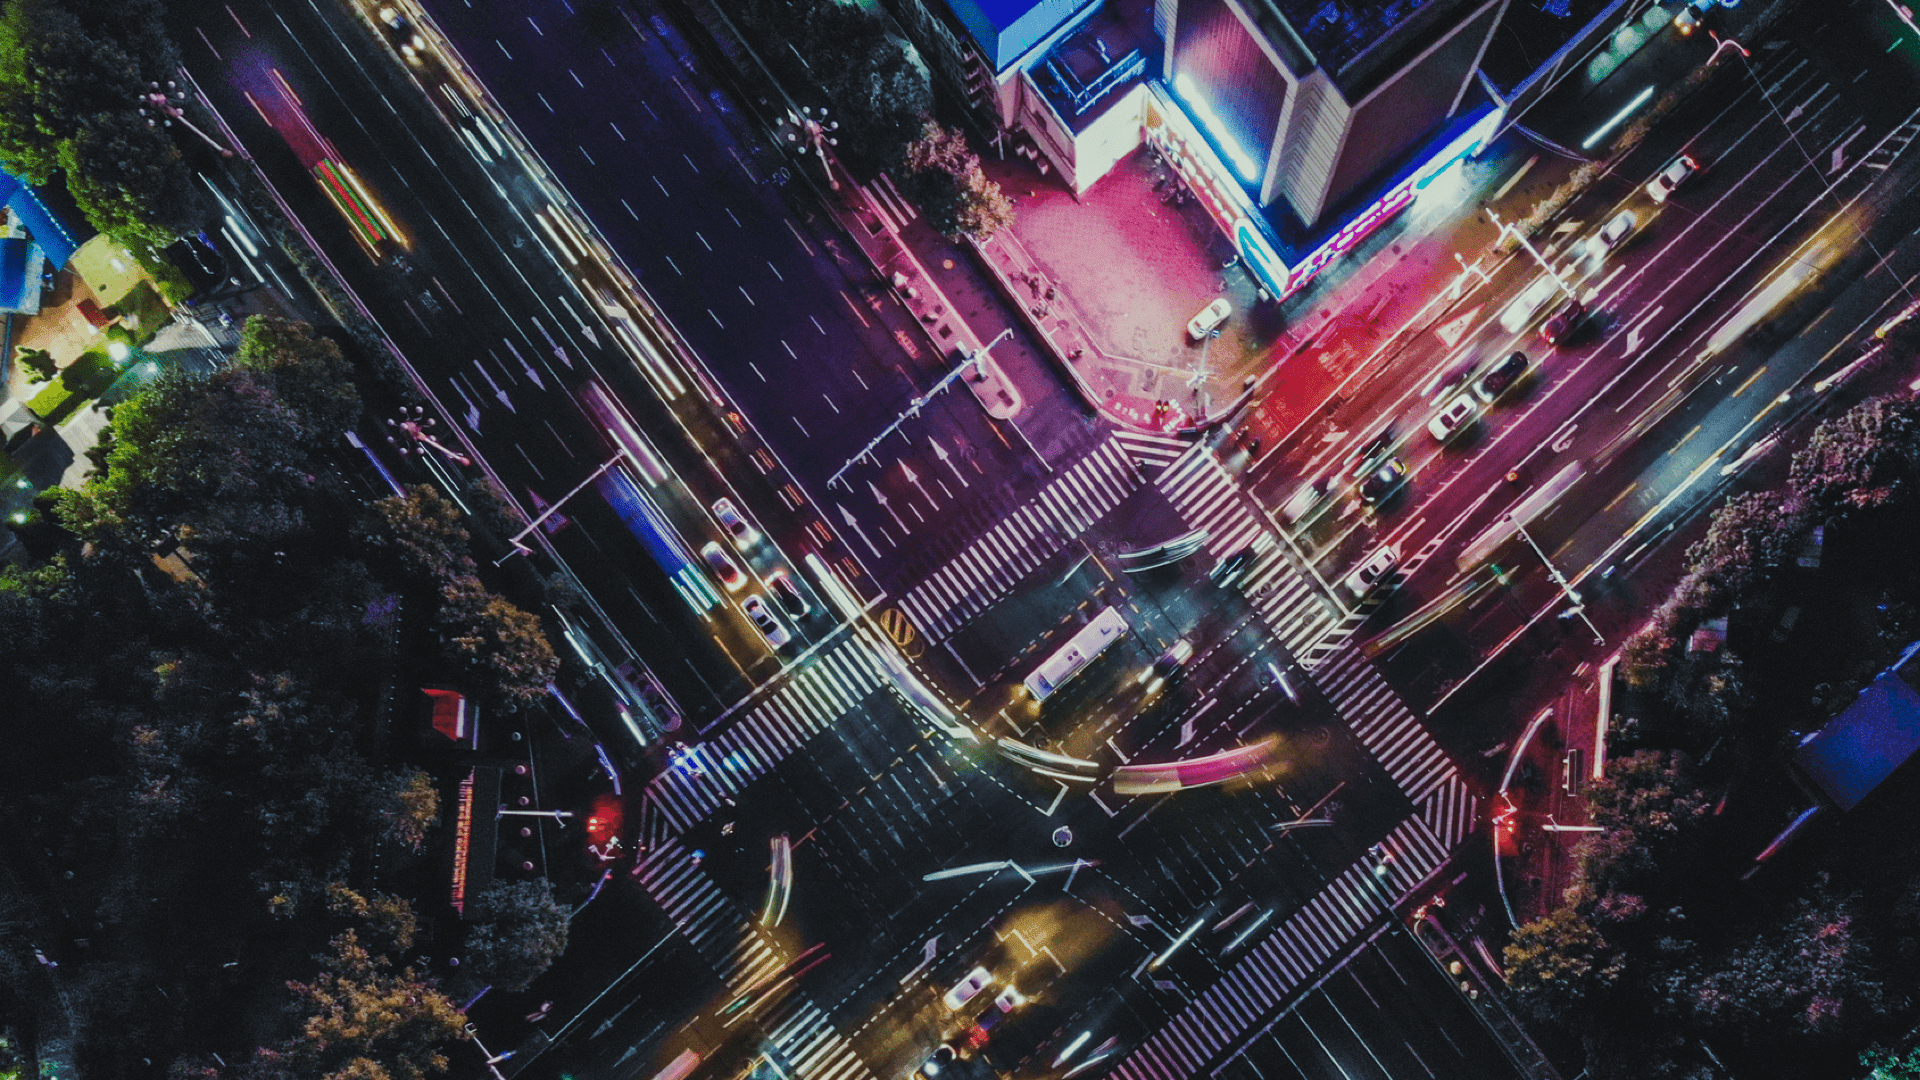  
Vue aérienne d’une intersection urbaine très fréquentée la nuit, avec des lumières vives, des affichages numériques extérieurs et des véhicules en mouvement.

